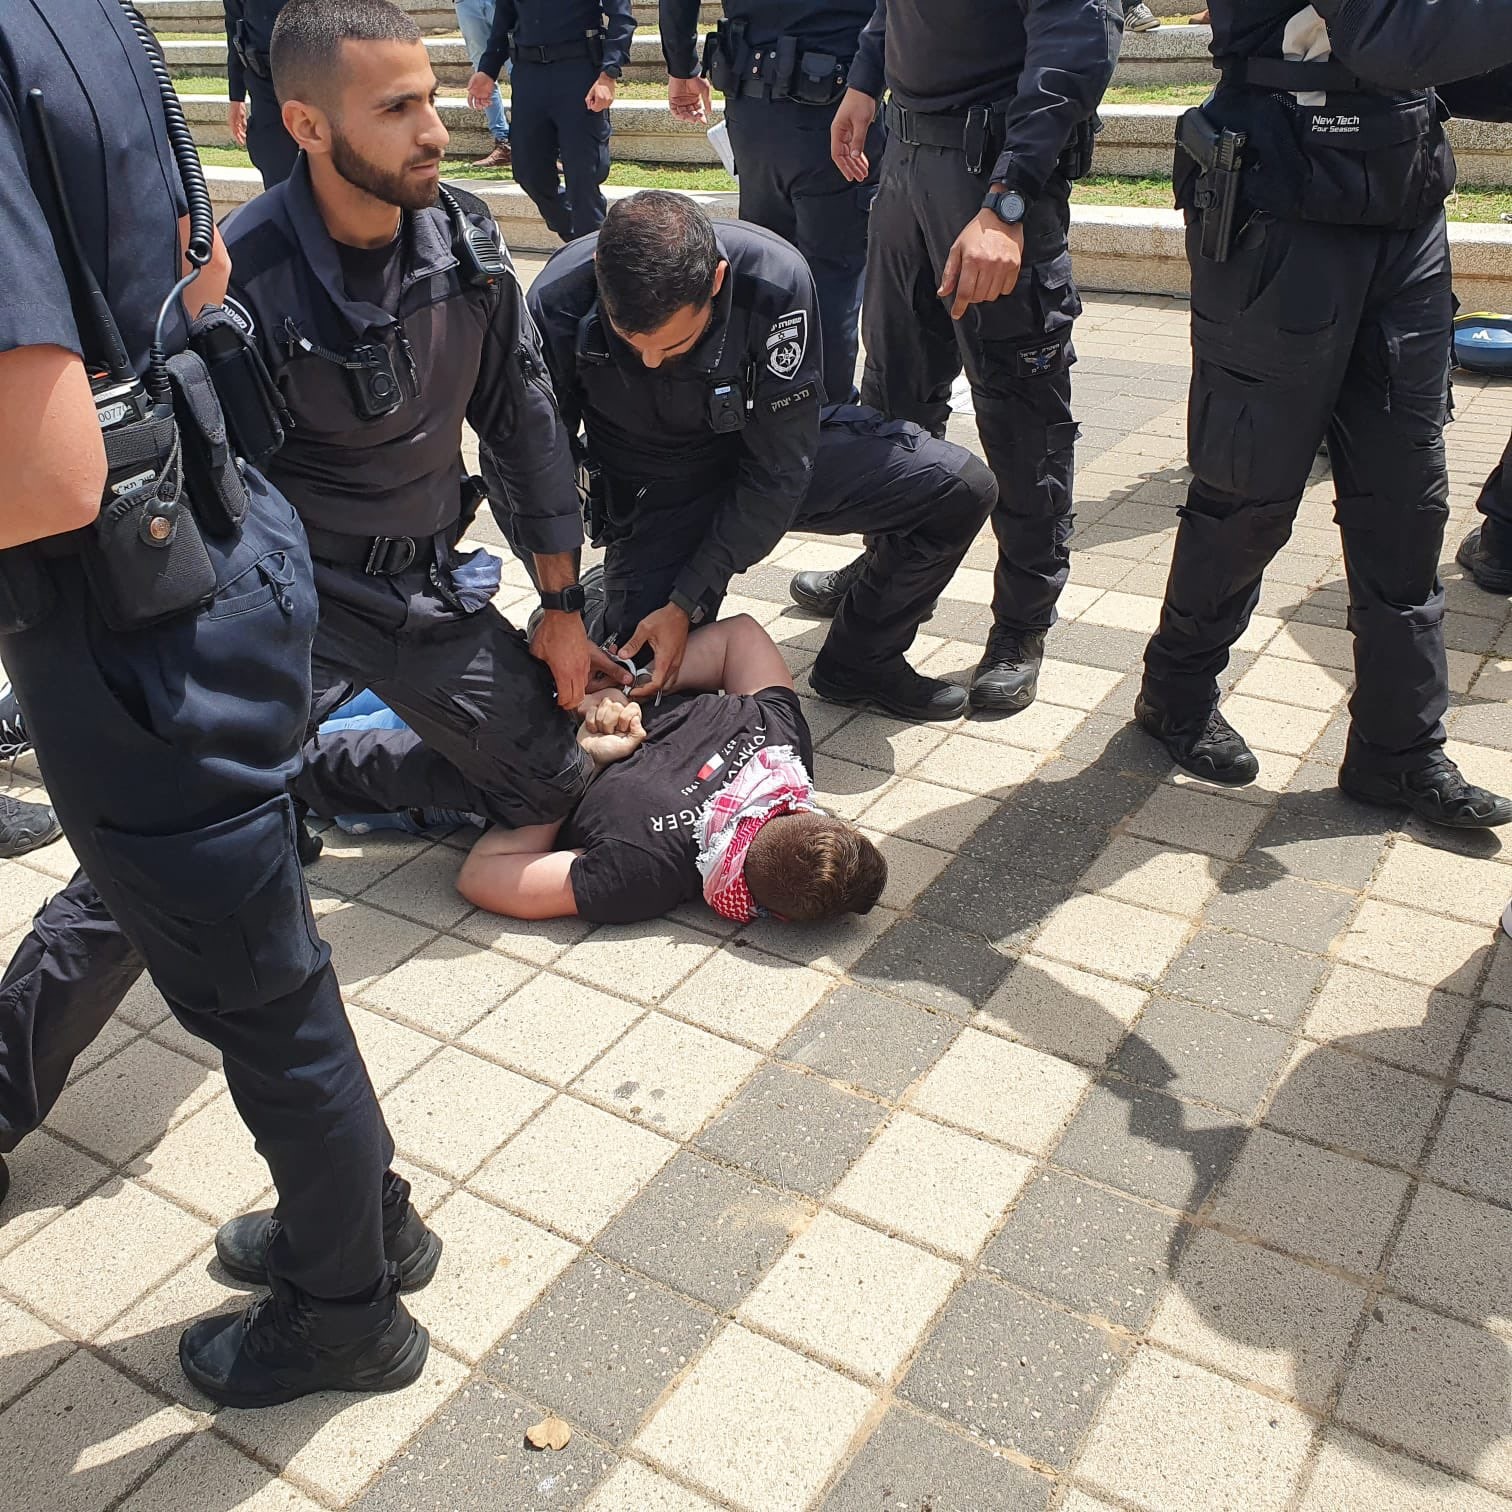 נמשך מסע הדיכוי המשטרתי: שלושה סטודנטים ערבים נעצרו בטקס יום הנכבה באונ' ת"א